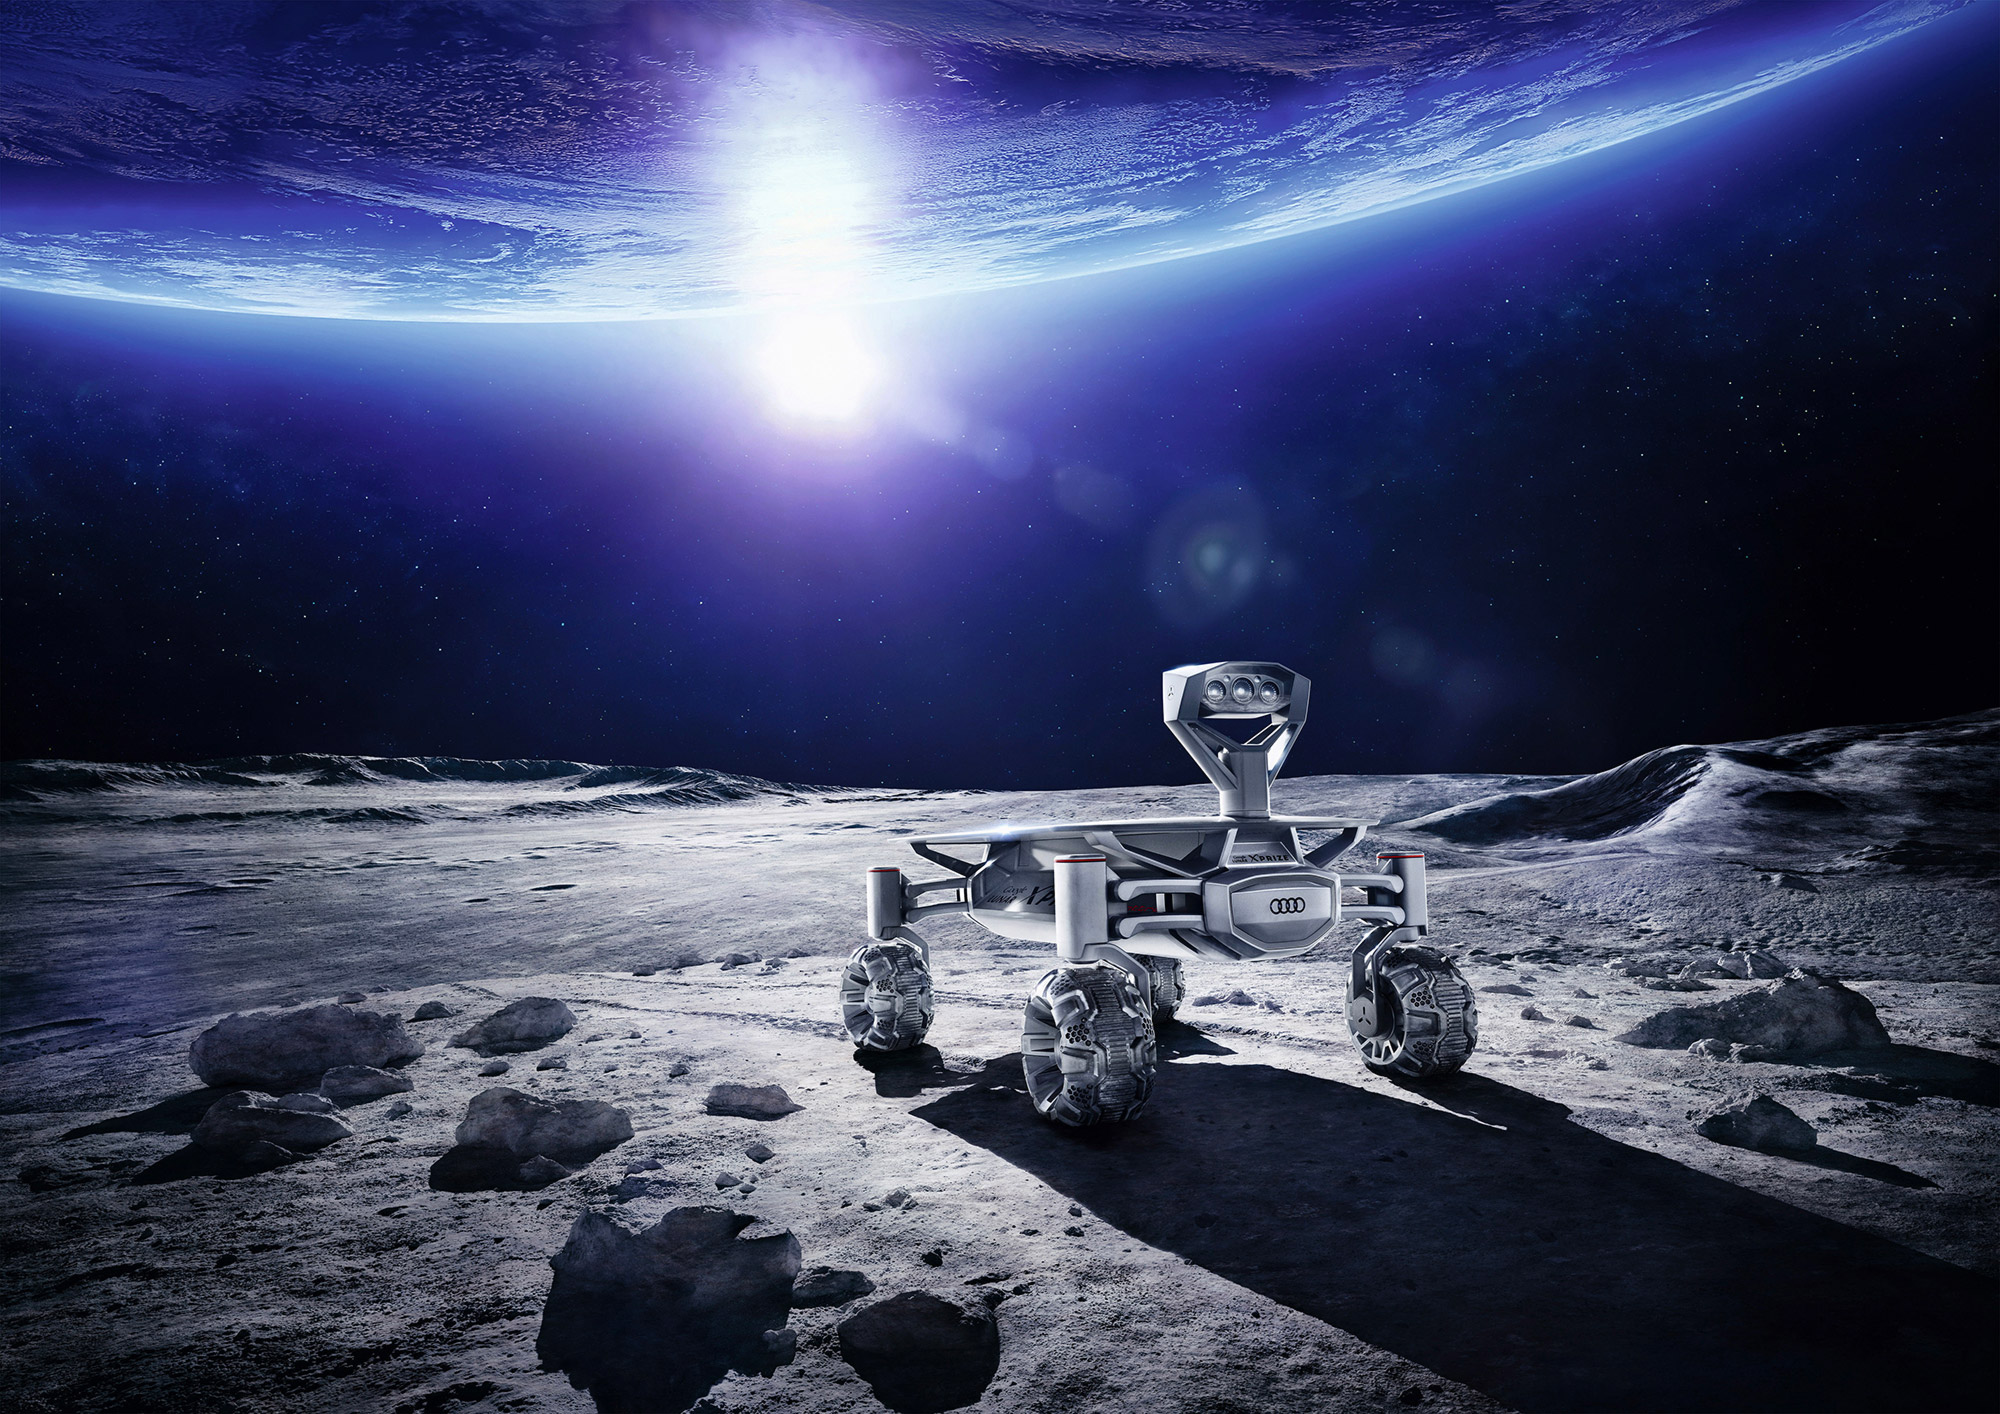 Le lancement de l'Audi Lunar Quattro est prévu d'ici la fin de l'année au moyen d'un lanceur de SpaceX ou de l'Agence spatiale indienne. © Audi, Part-Time-Scientists